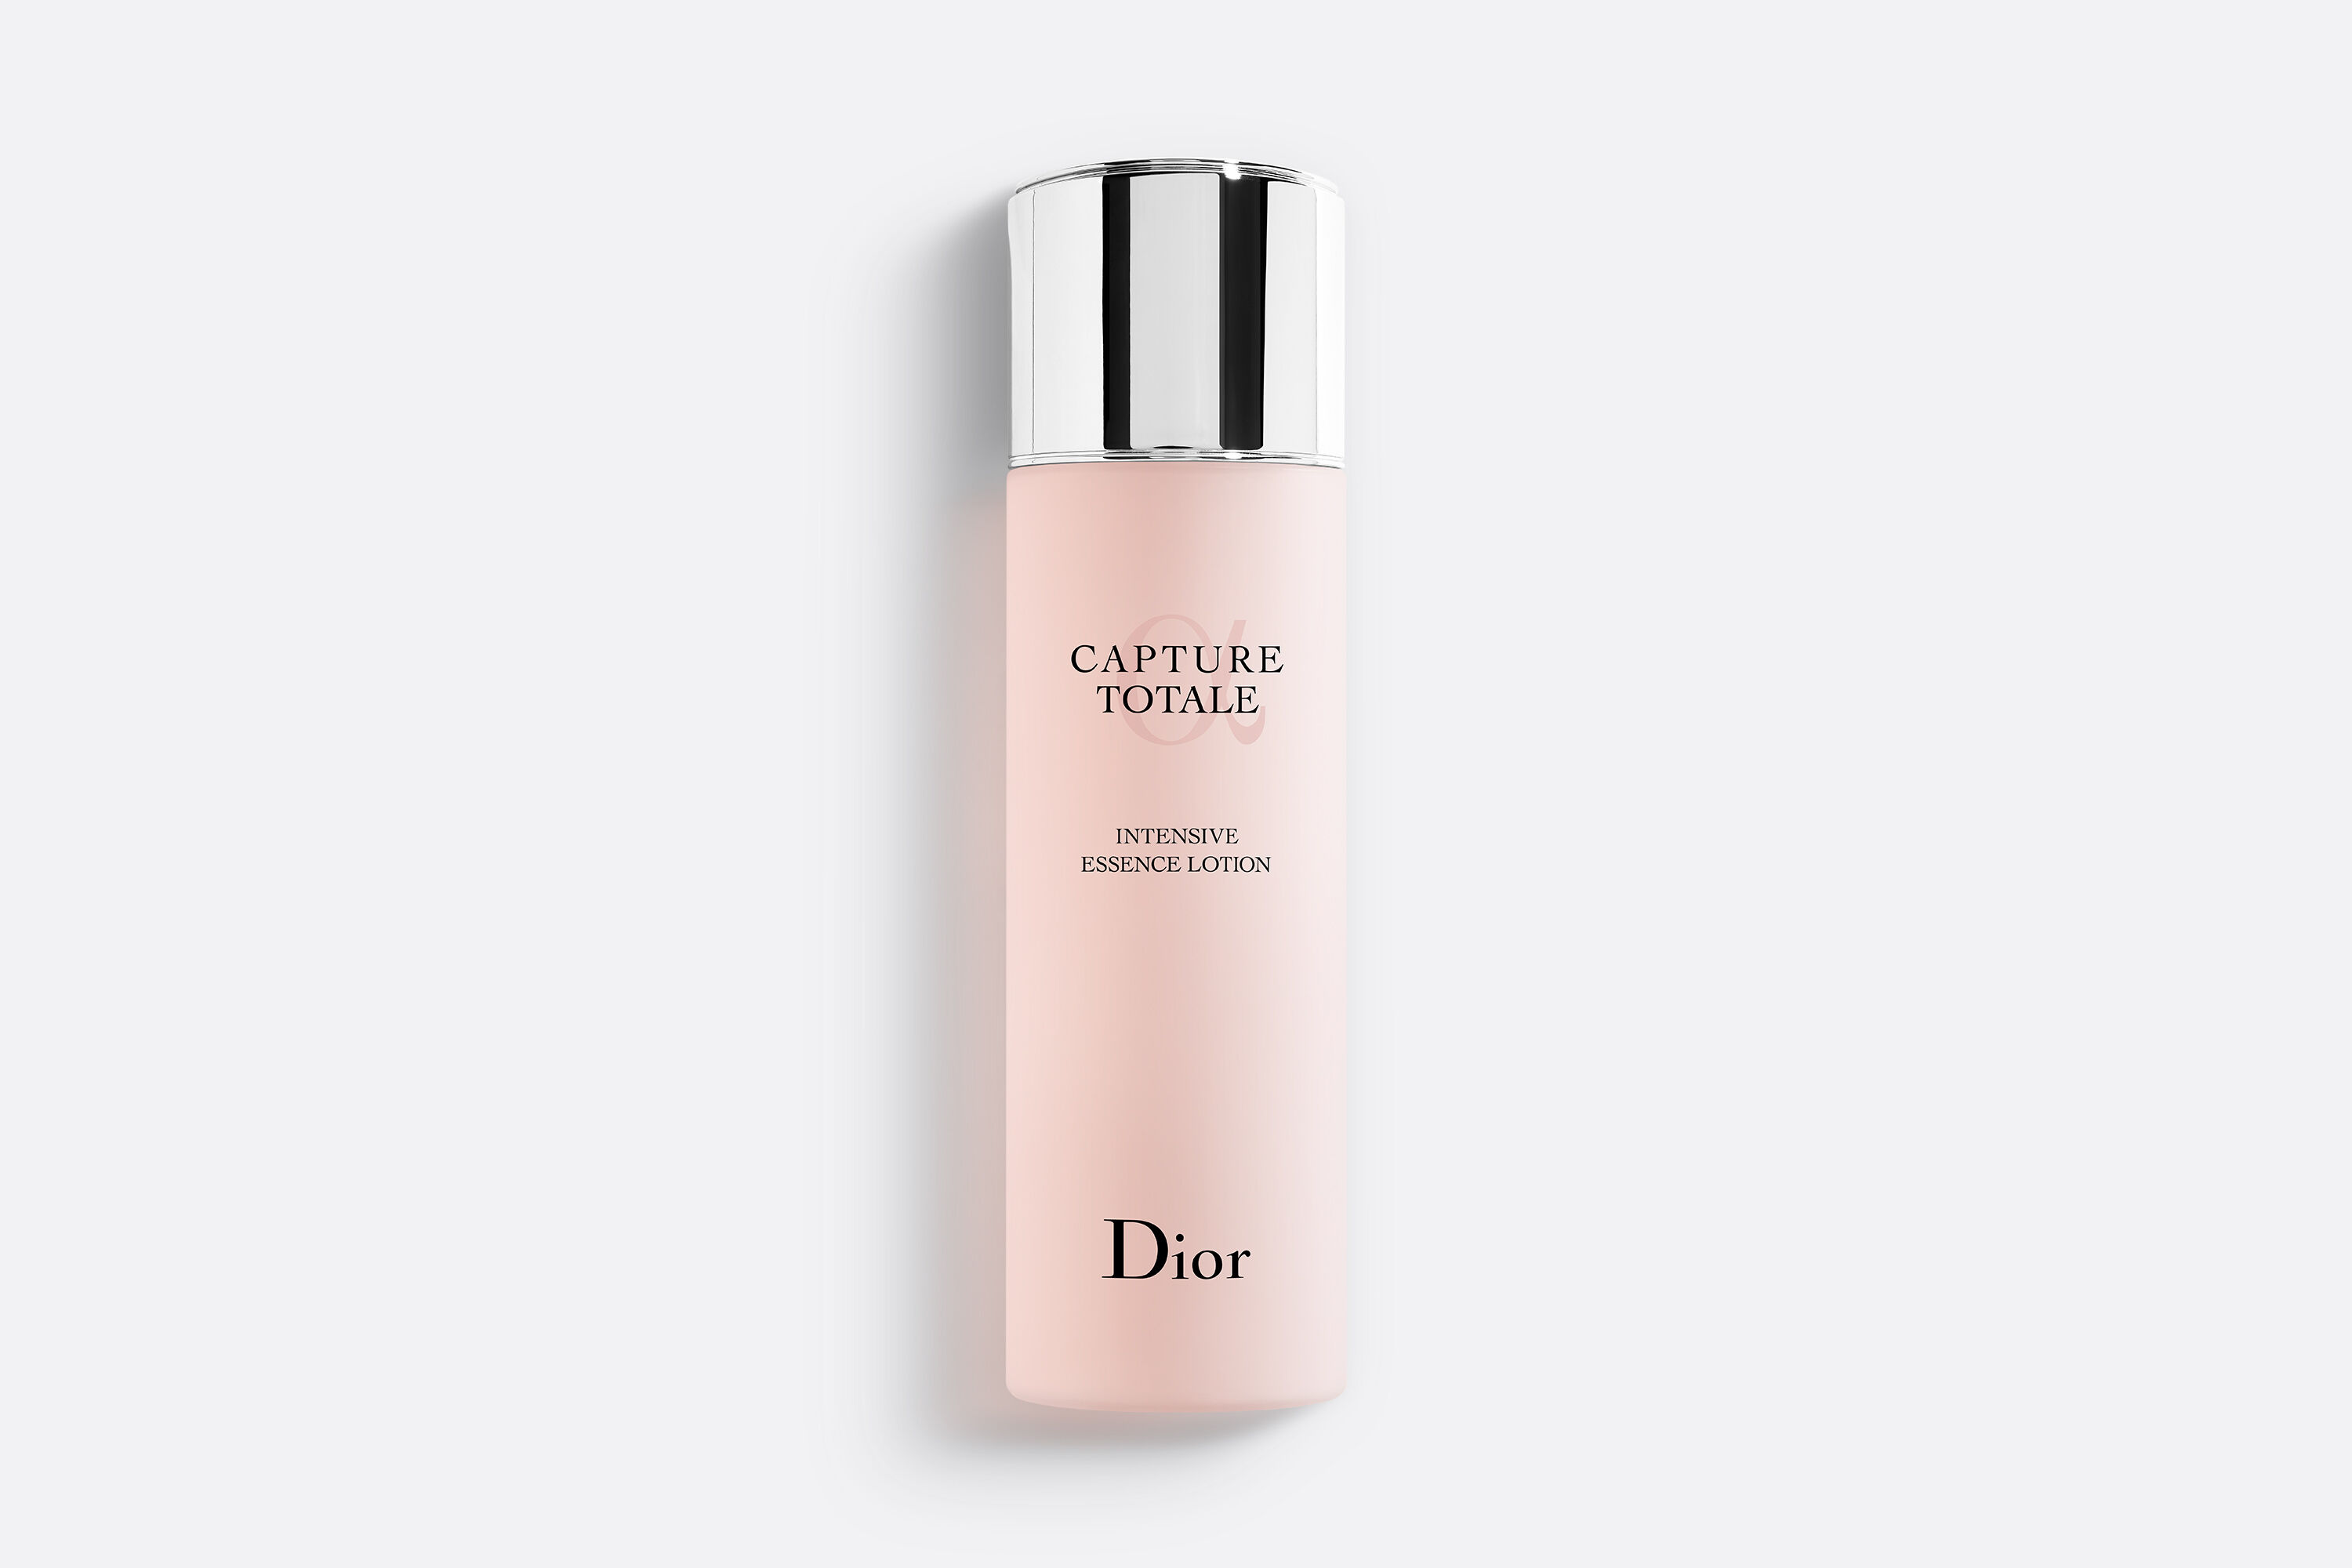  لوشن كابتشير توتال سليلار لوشين من ديور Dior Capture Total Cellular Lotion